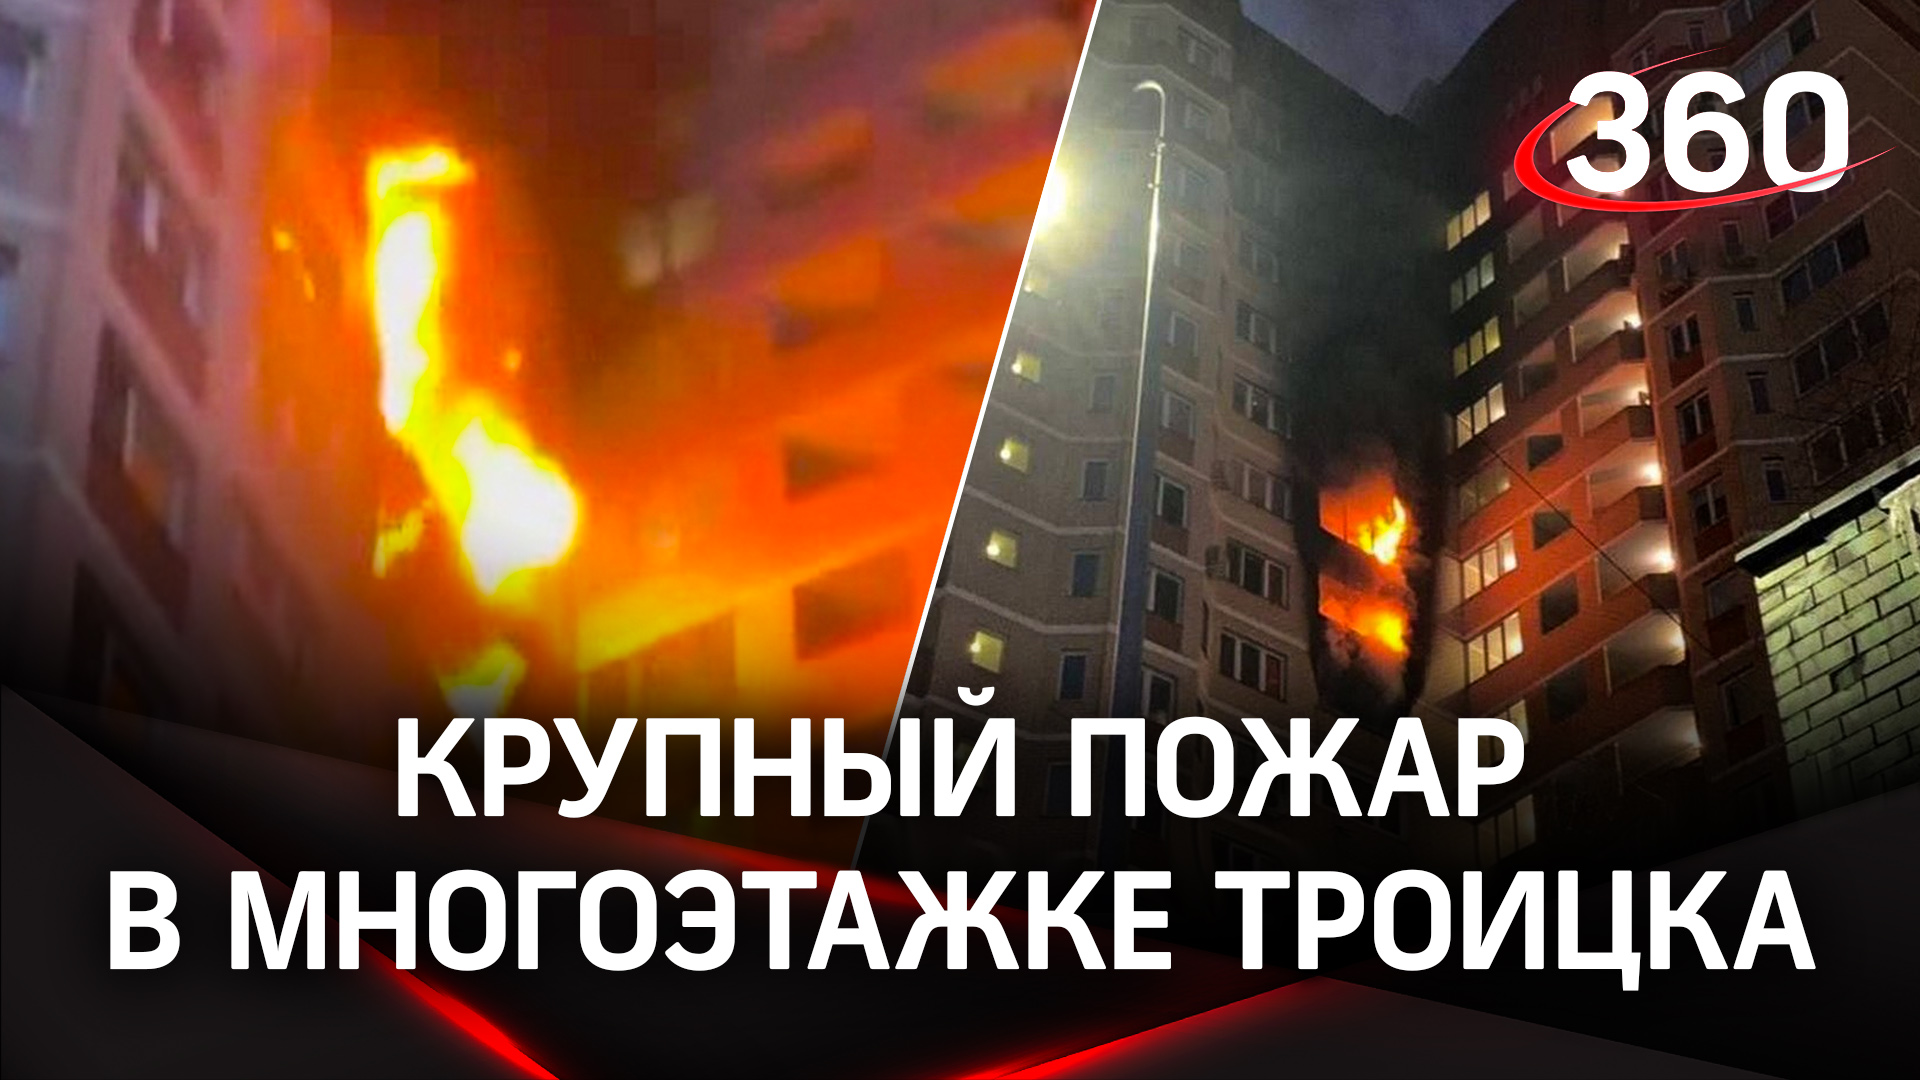 Три этажа огня: в Троицке выгорели несколько квартир